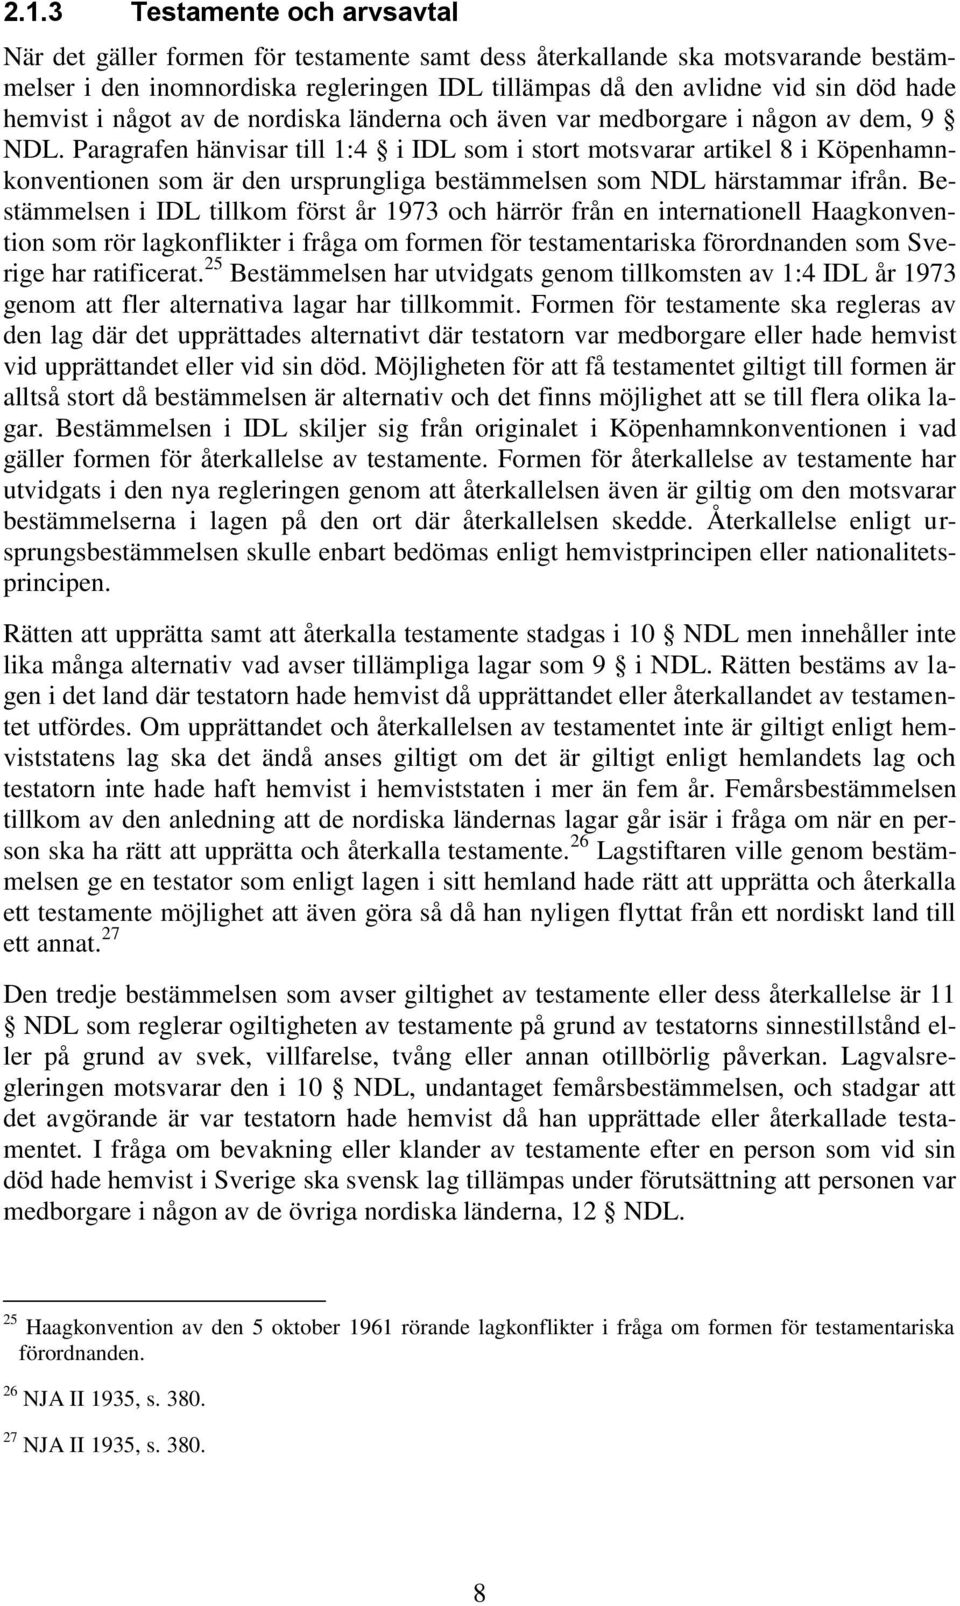 Paragrafen hänvisar till 1:4 i IDL som i stort motsvarar artikel 8 i Köpenhamnkonventionen som är den ursprungliga bestämmelsen som NDL härstammar ifrån.